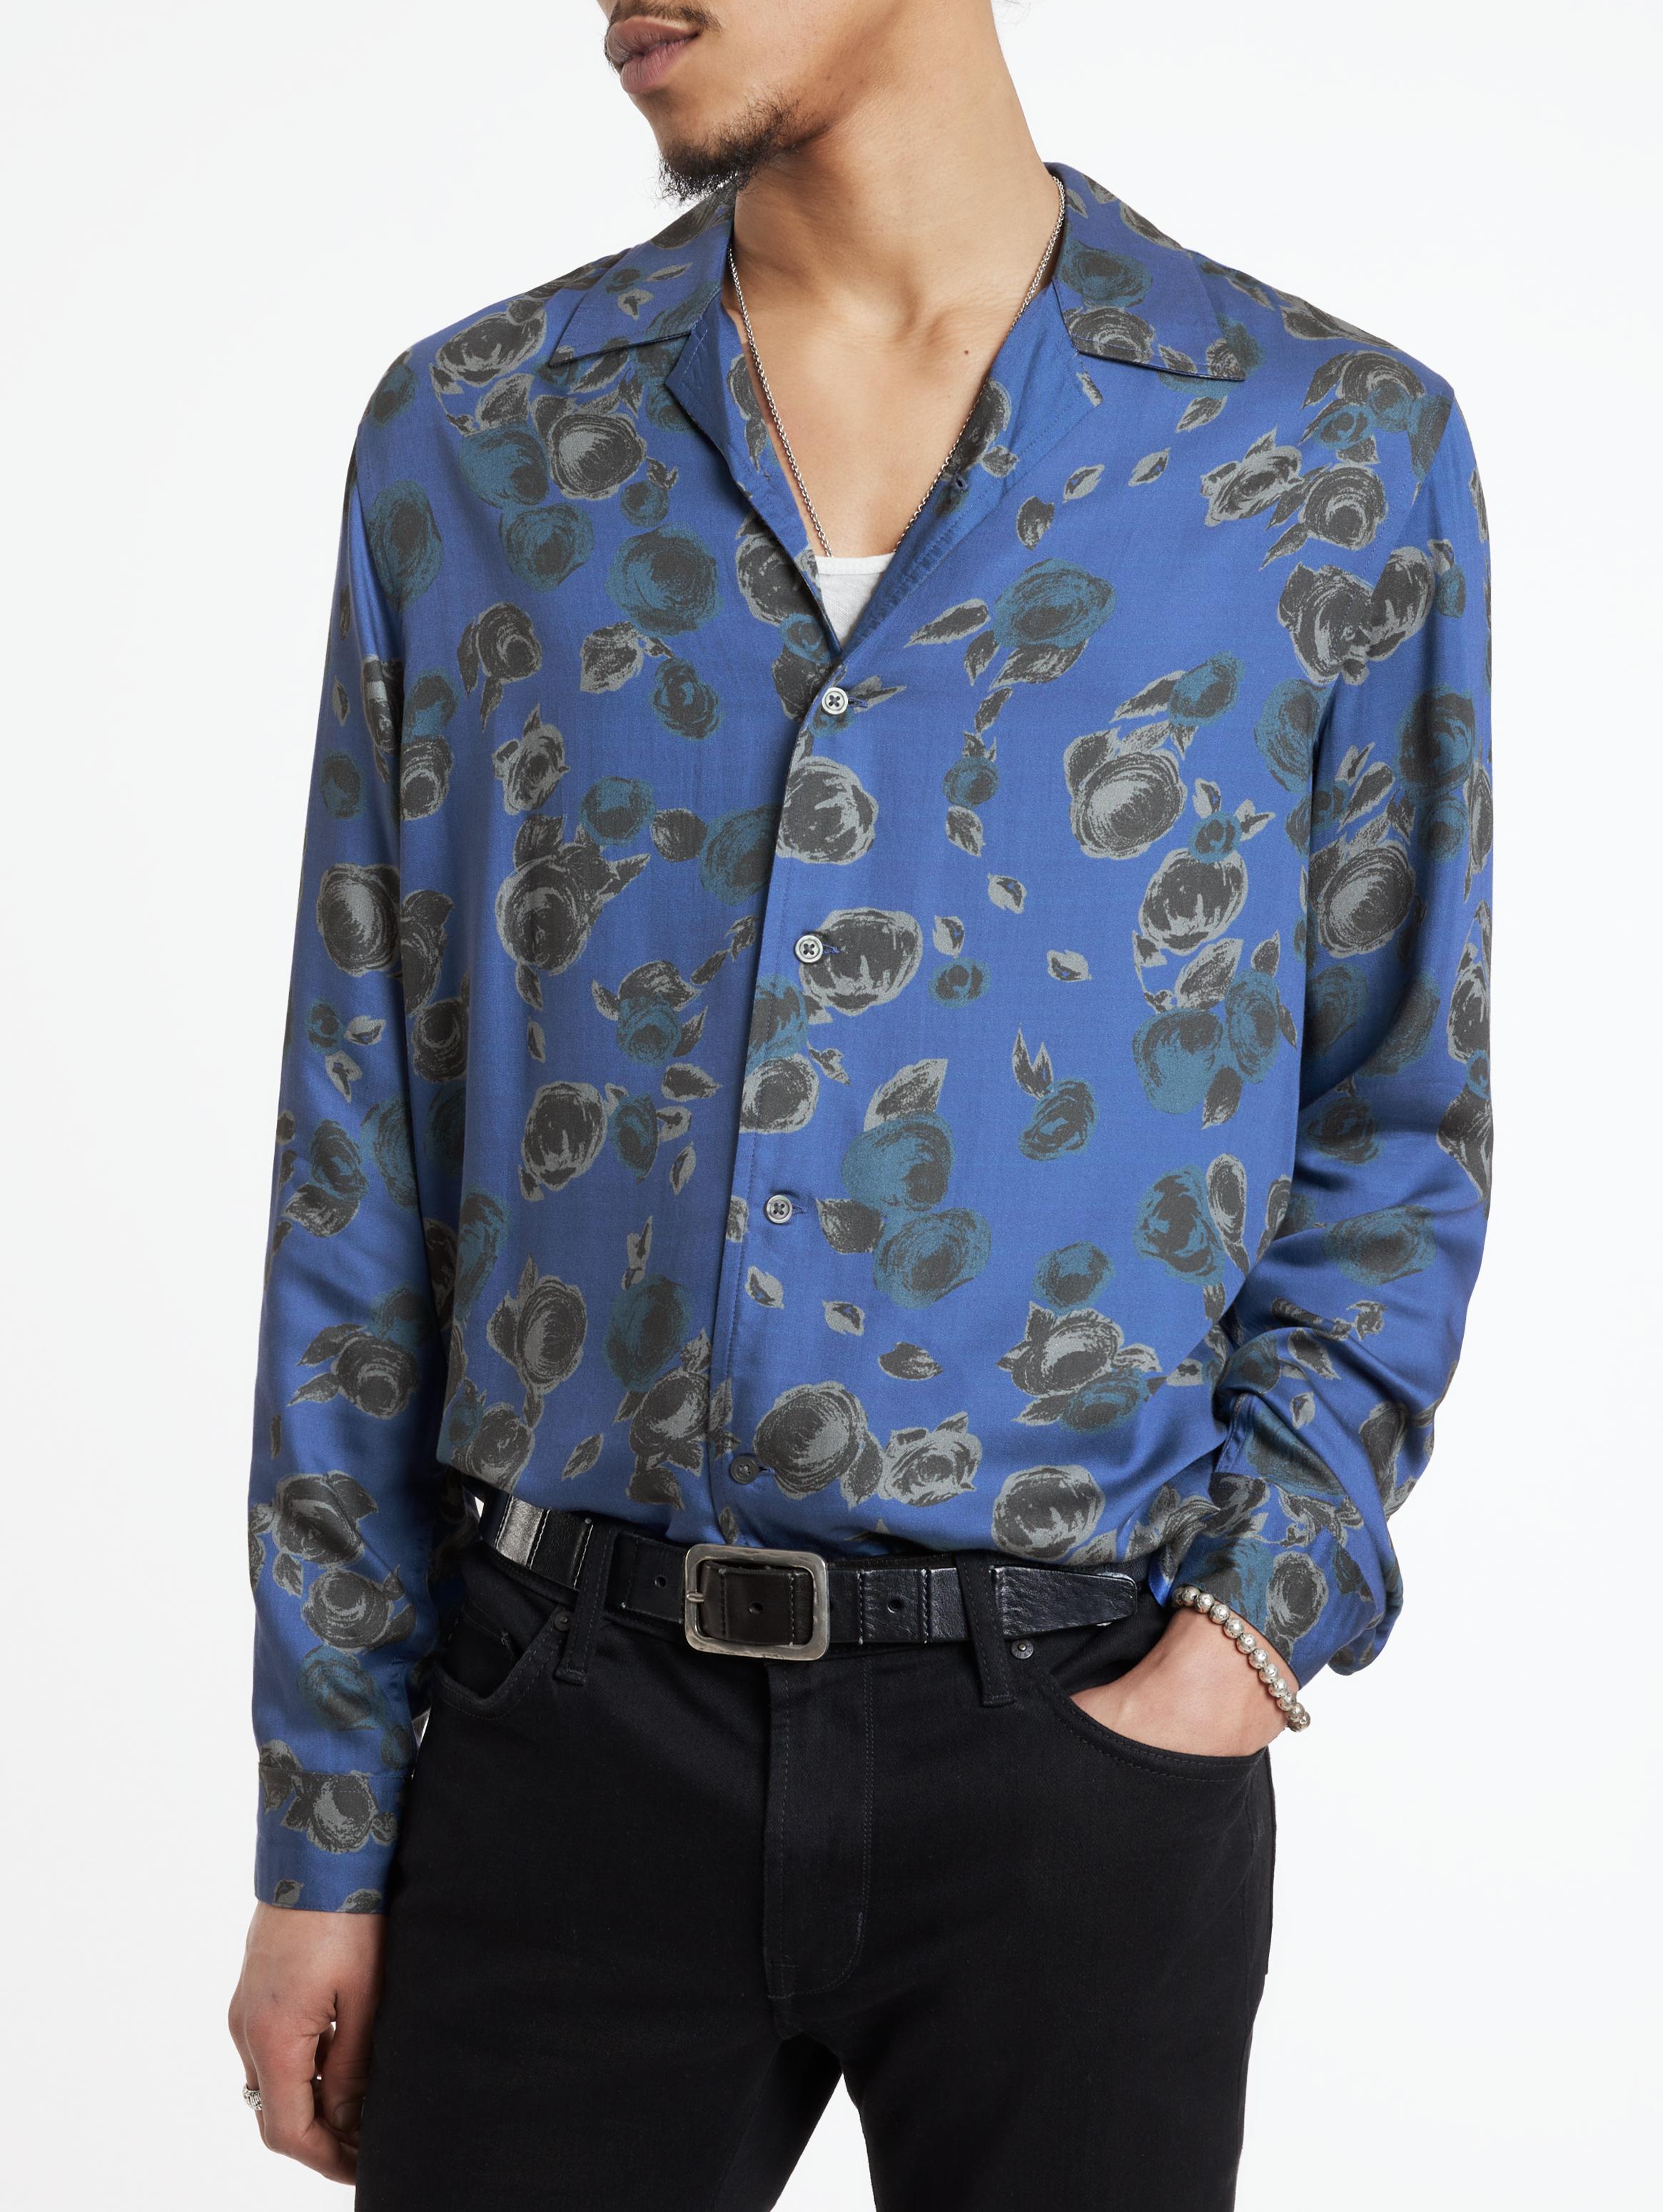 Louis Vuitton Dice silk shirt long sleeve